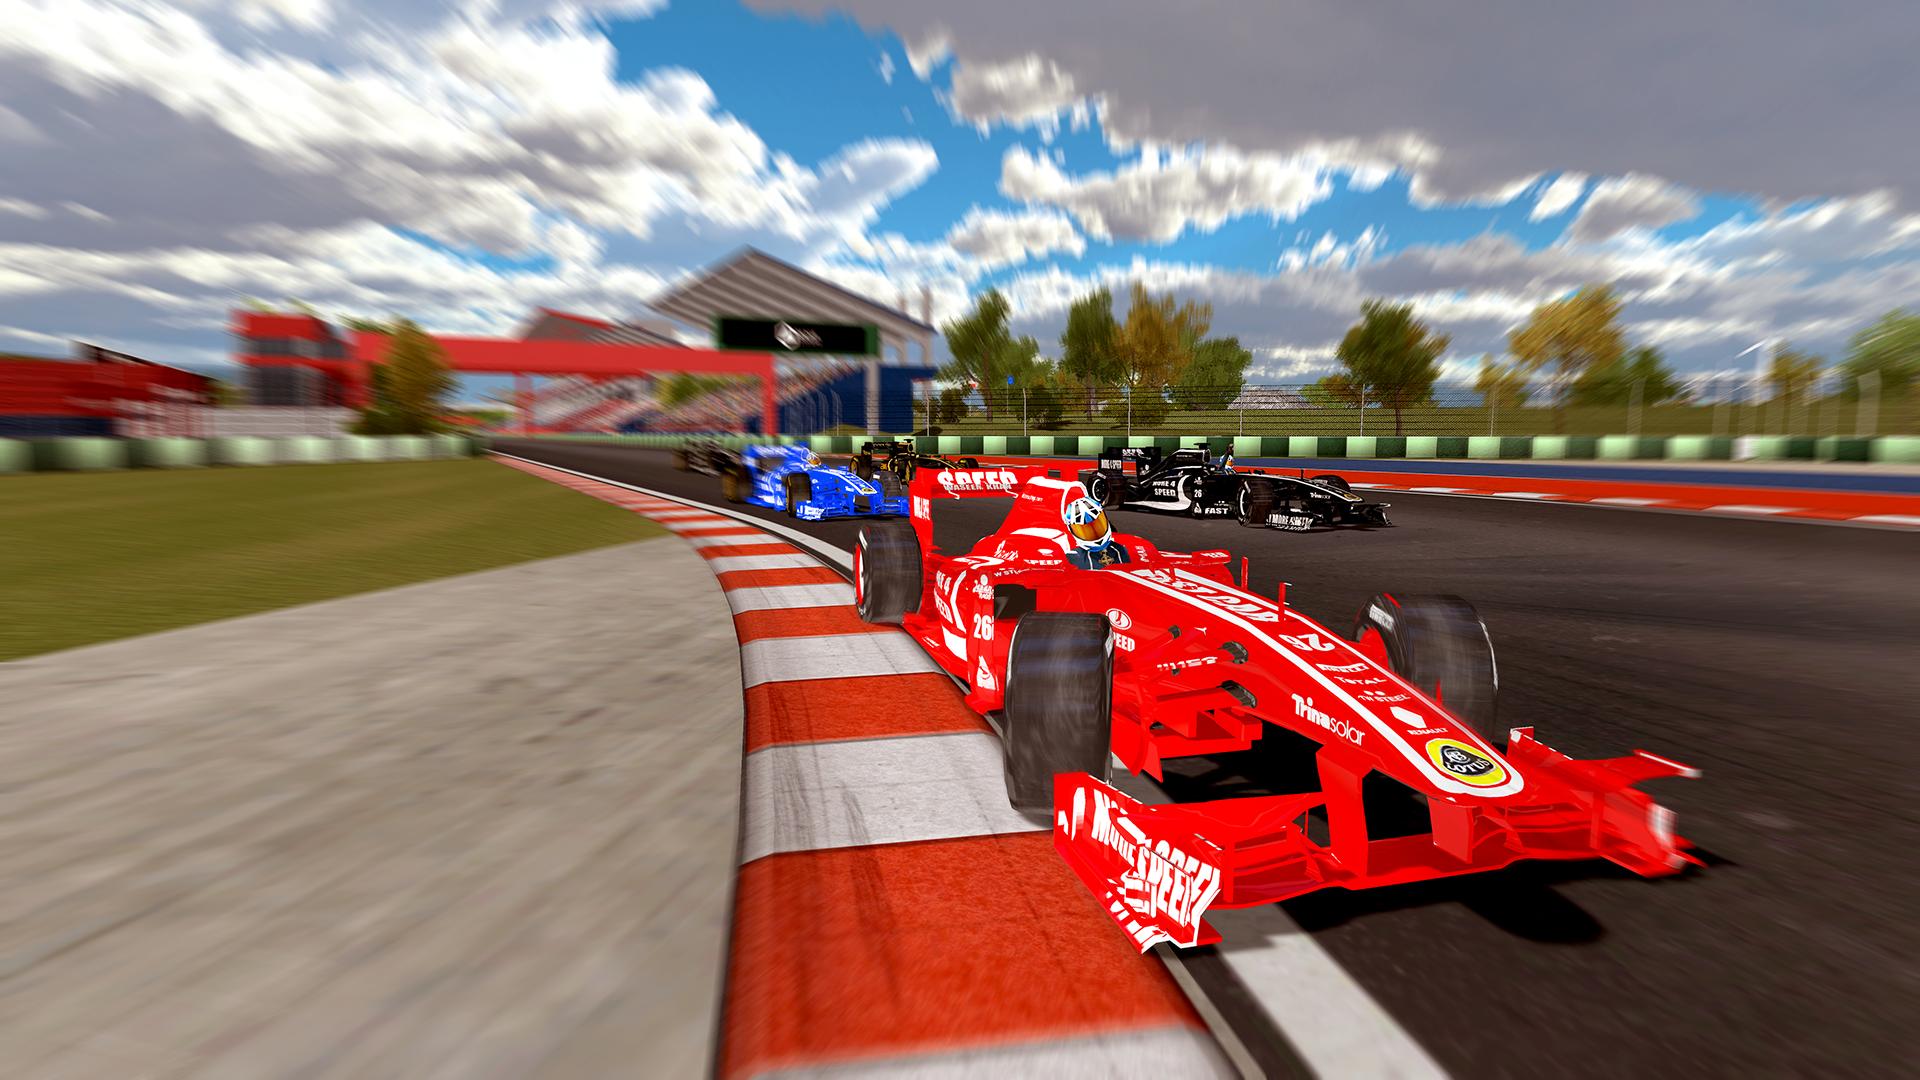 Cars speed racing. Реал рейсинг формула 1. Racing Speed f1. Track f1 BŞH. Формула 1 кар паркинг.